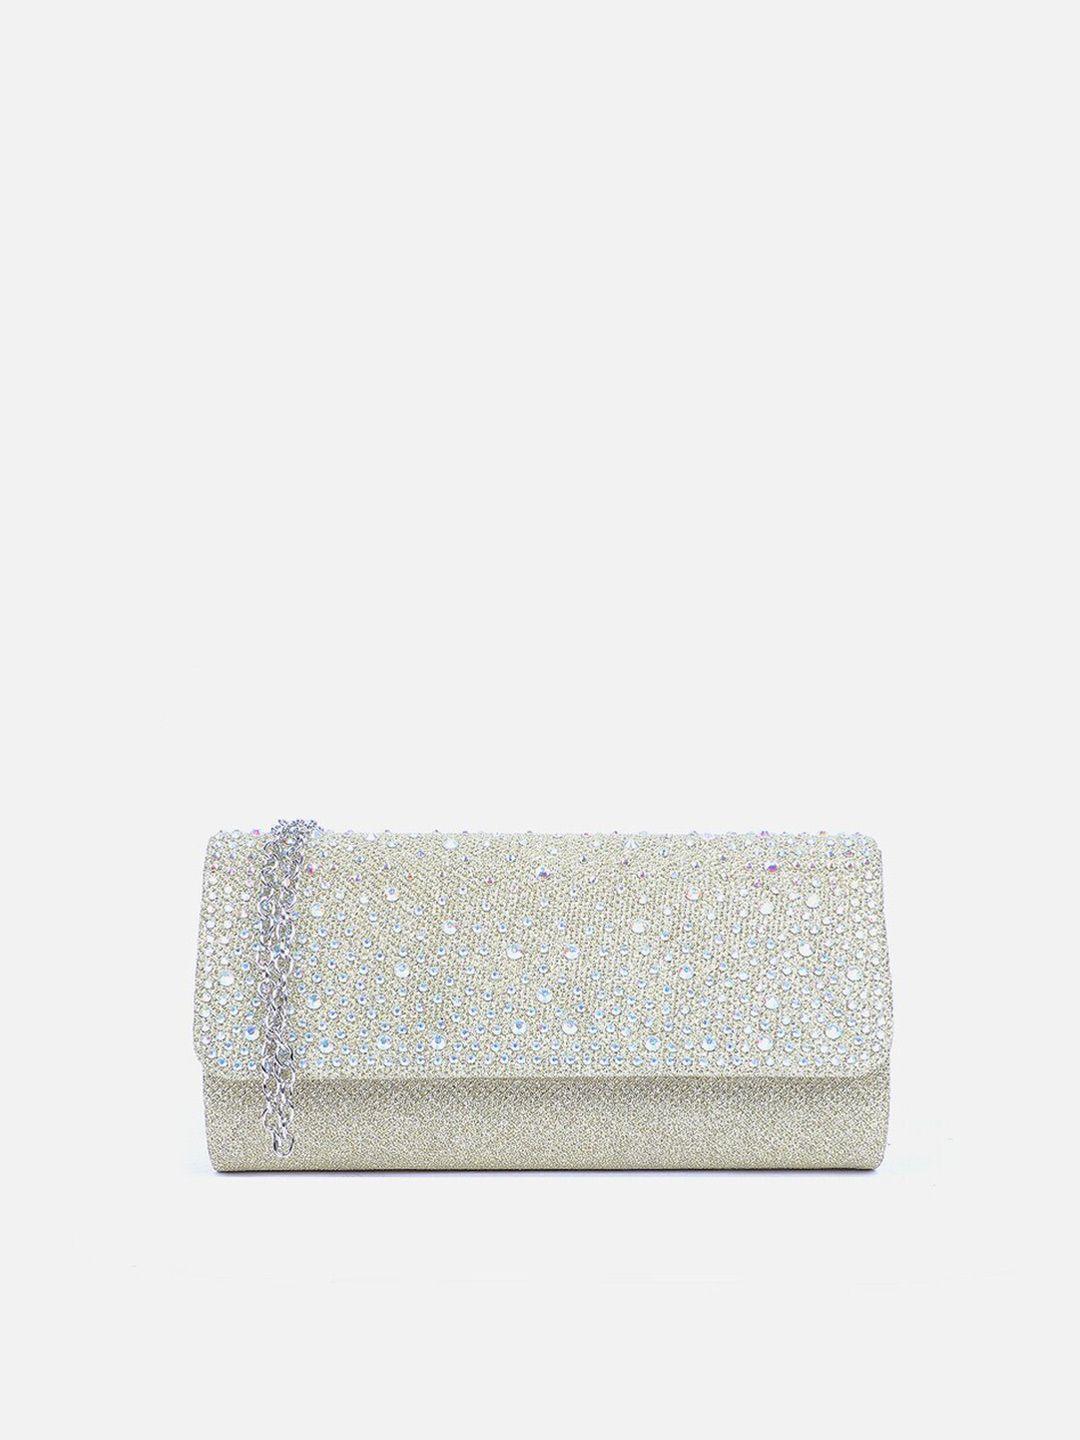 carlton london embellished shoulder strap purse clutch